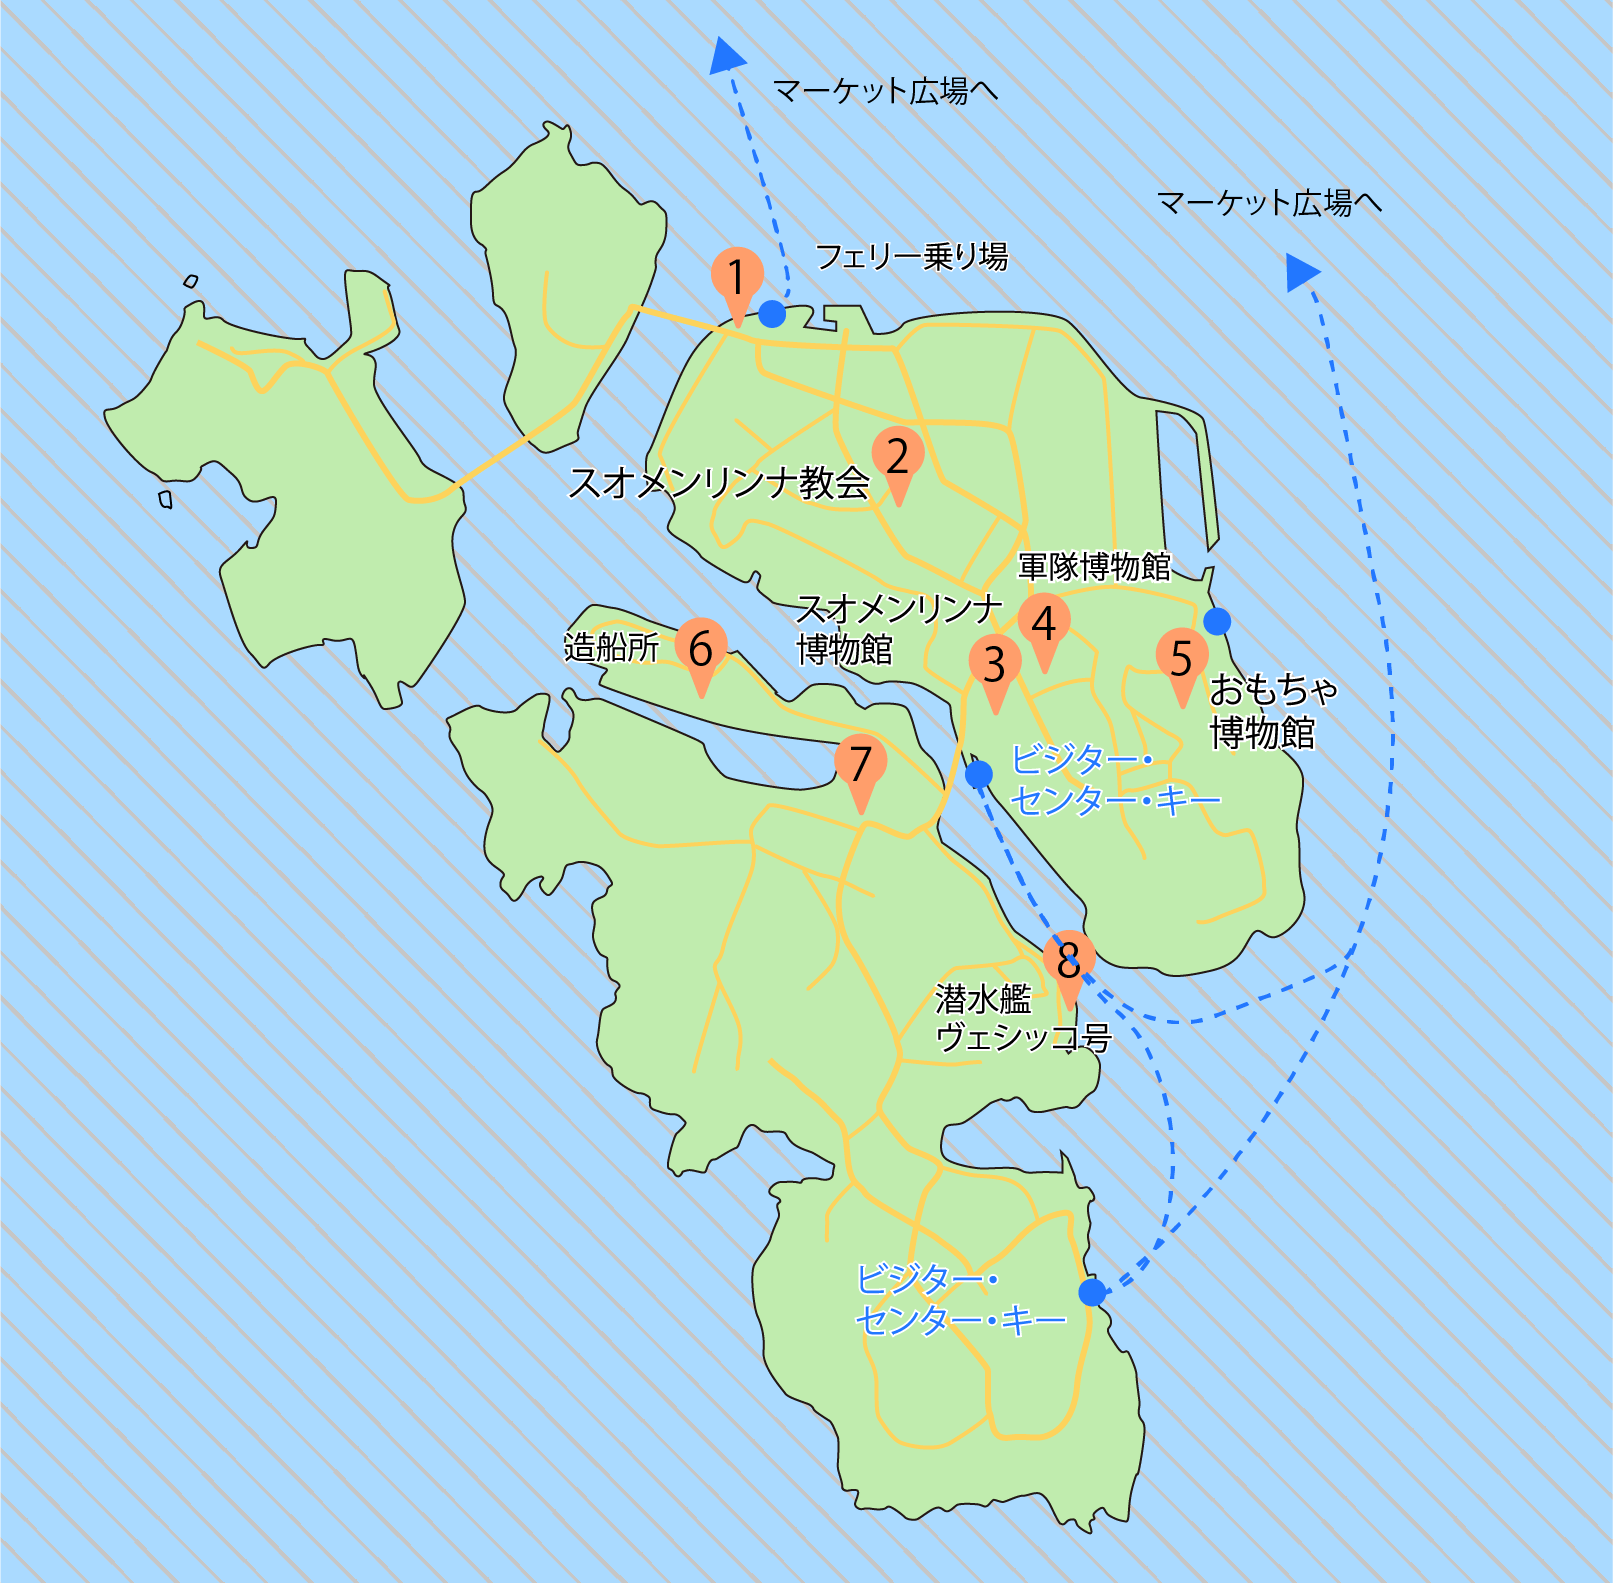 スオメンリンナ島の地図